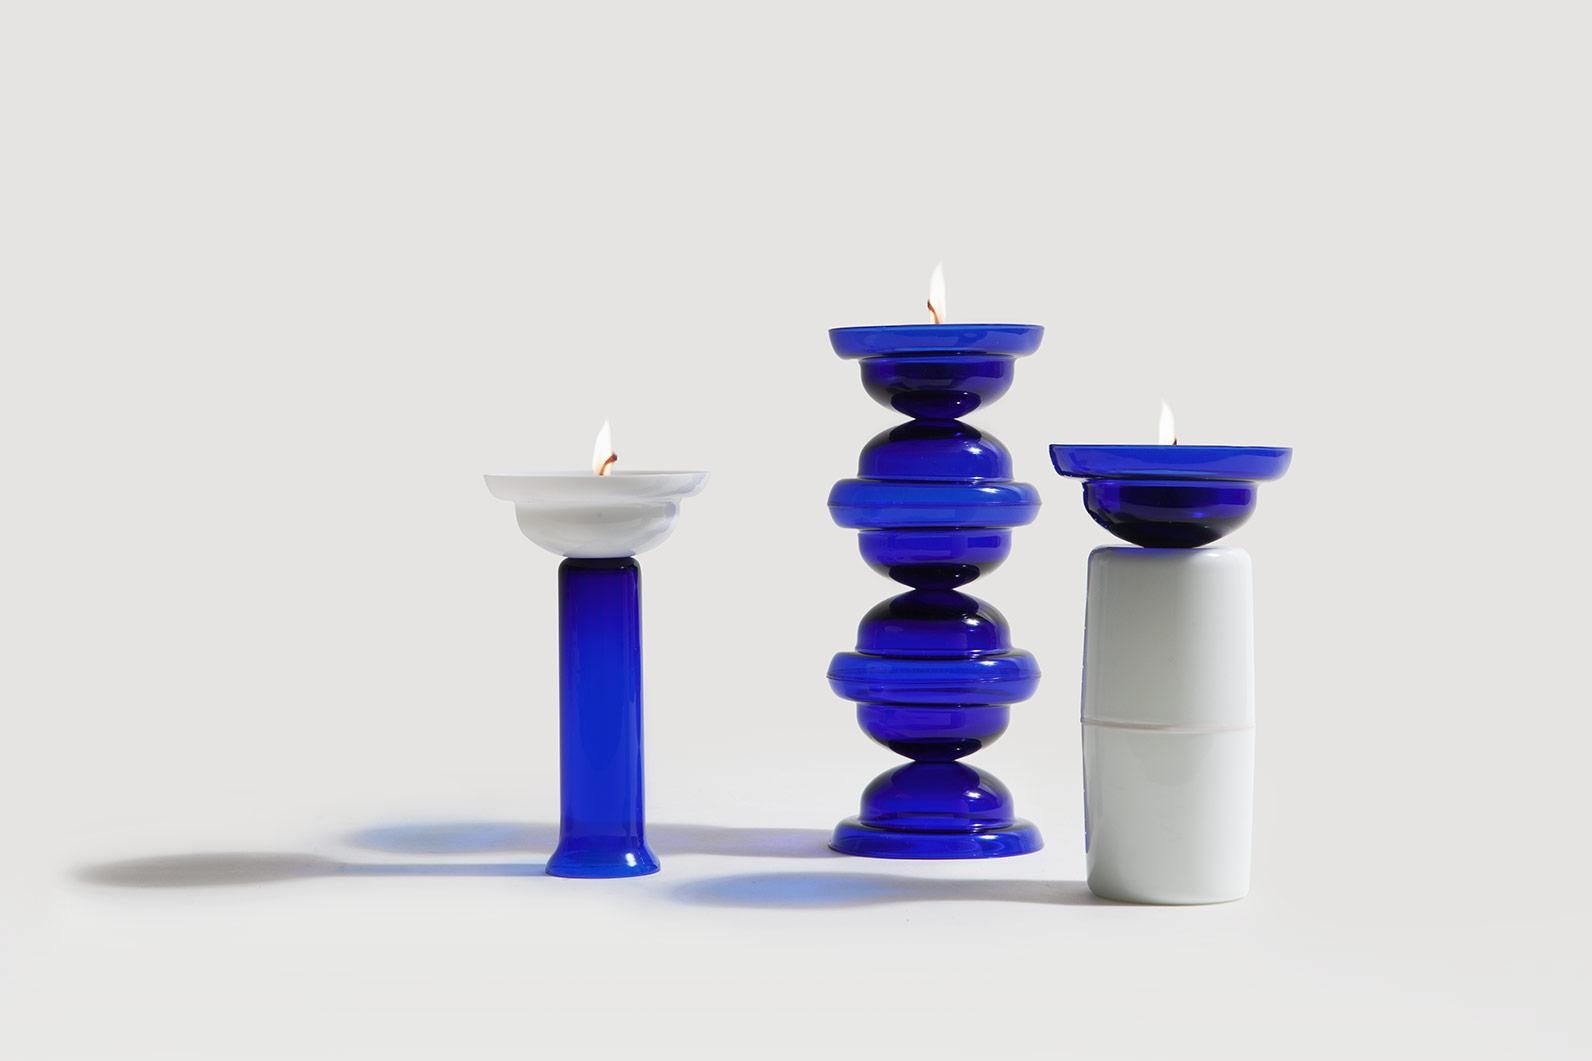 Glazed Candleholder in blue glass